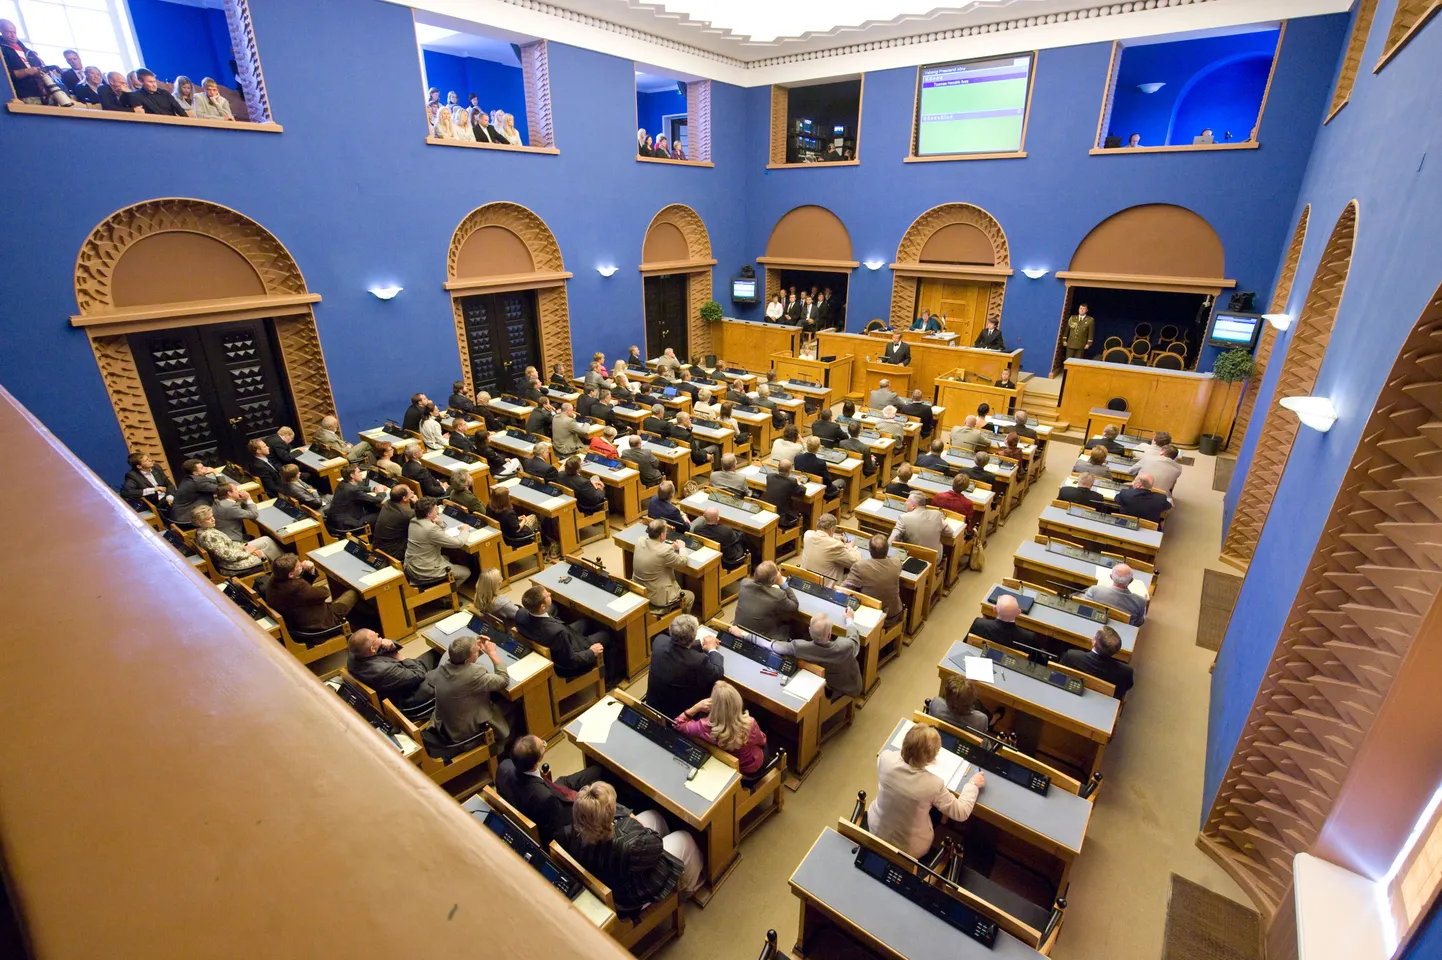 Riigikogu hõivavad 20. novembril lapsed, siis toimub foorum "101 last Toomapeale".